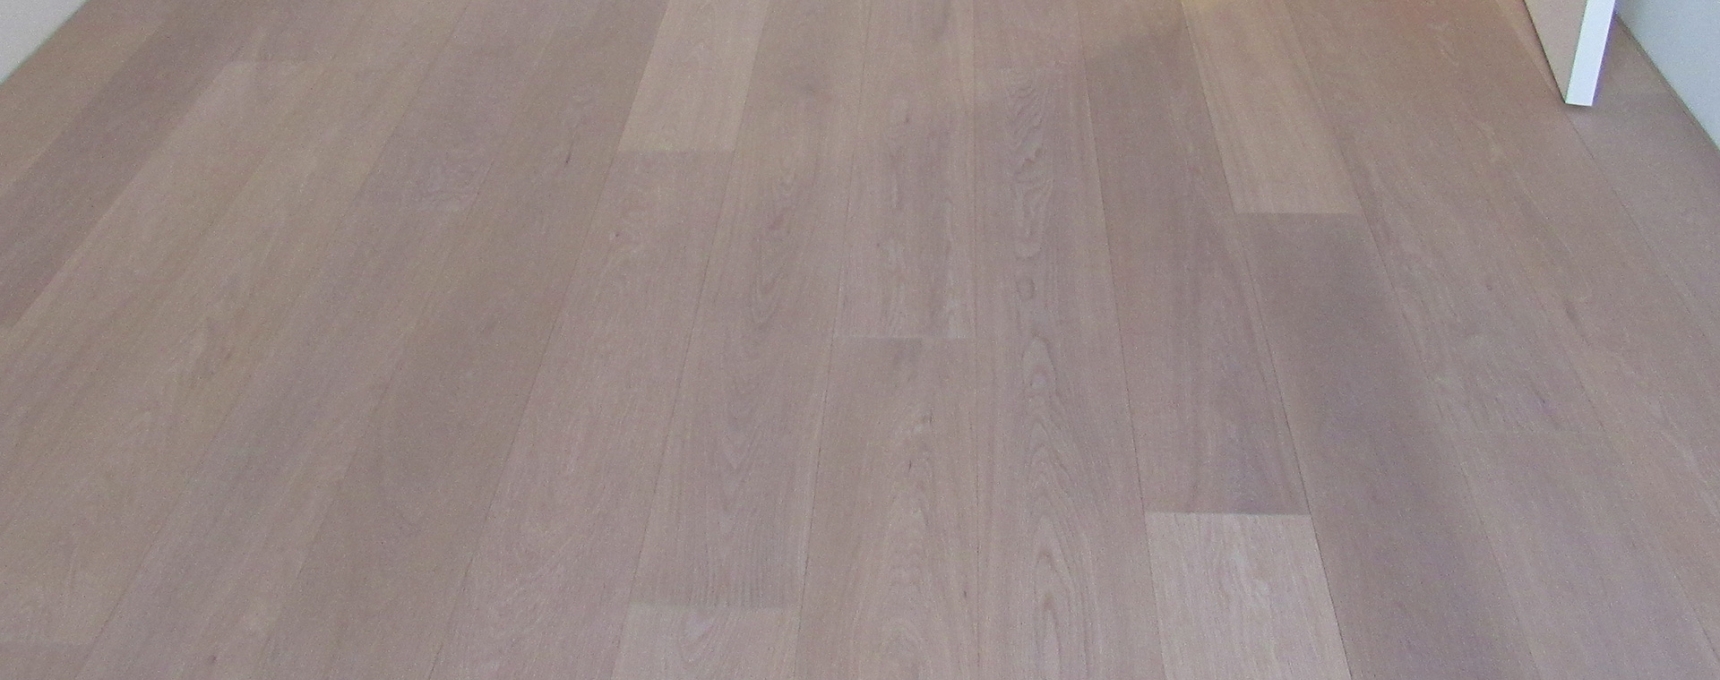 5 verschillende uitstralingen van een houten vloer